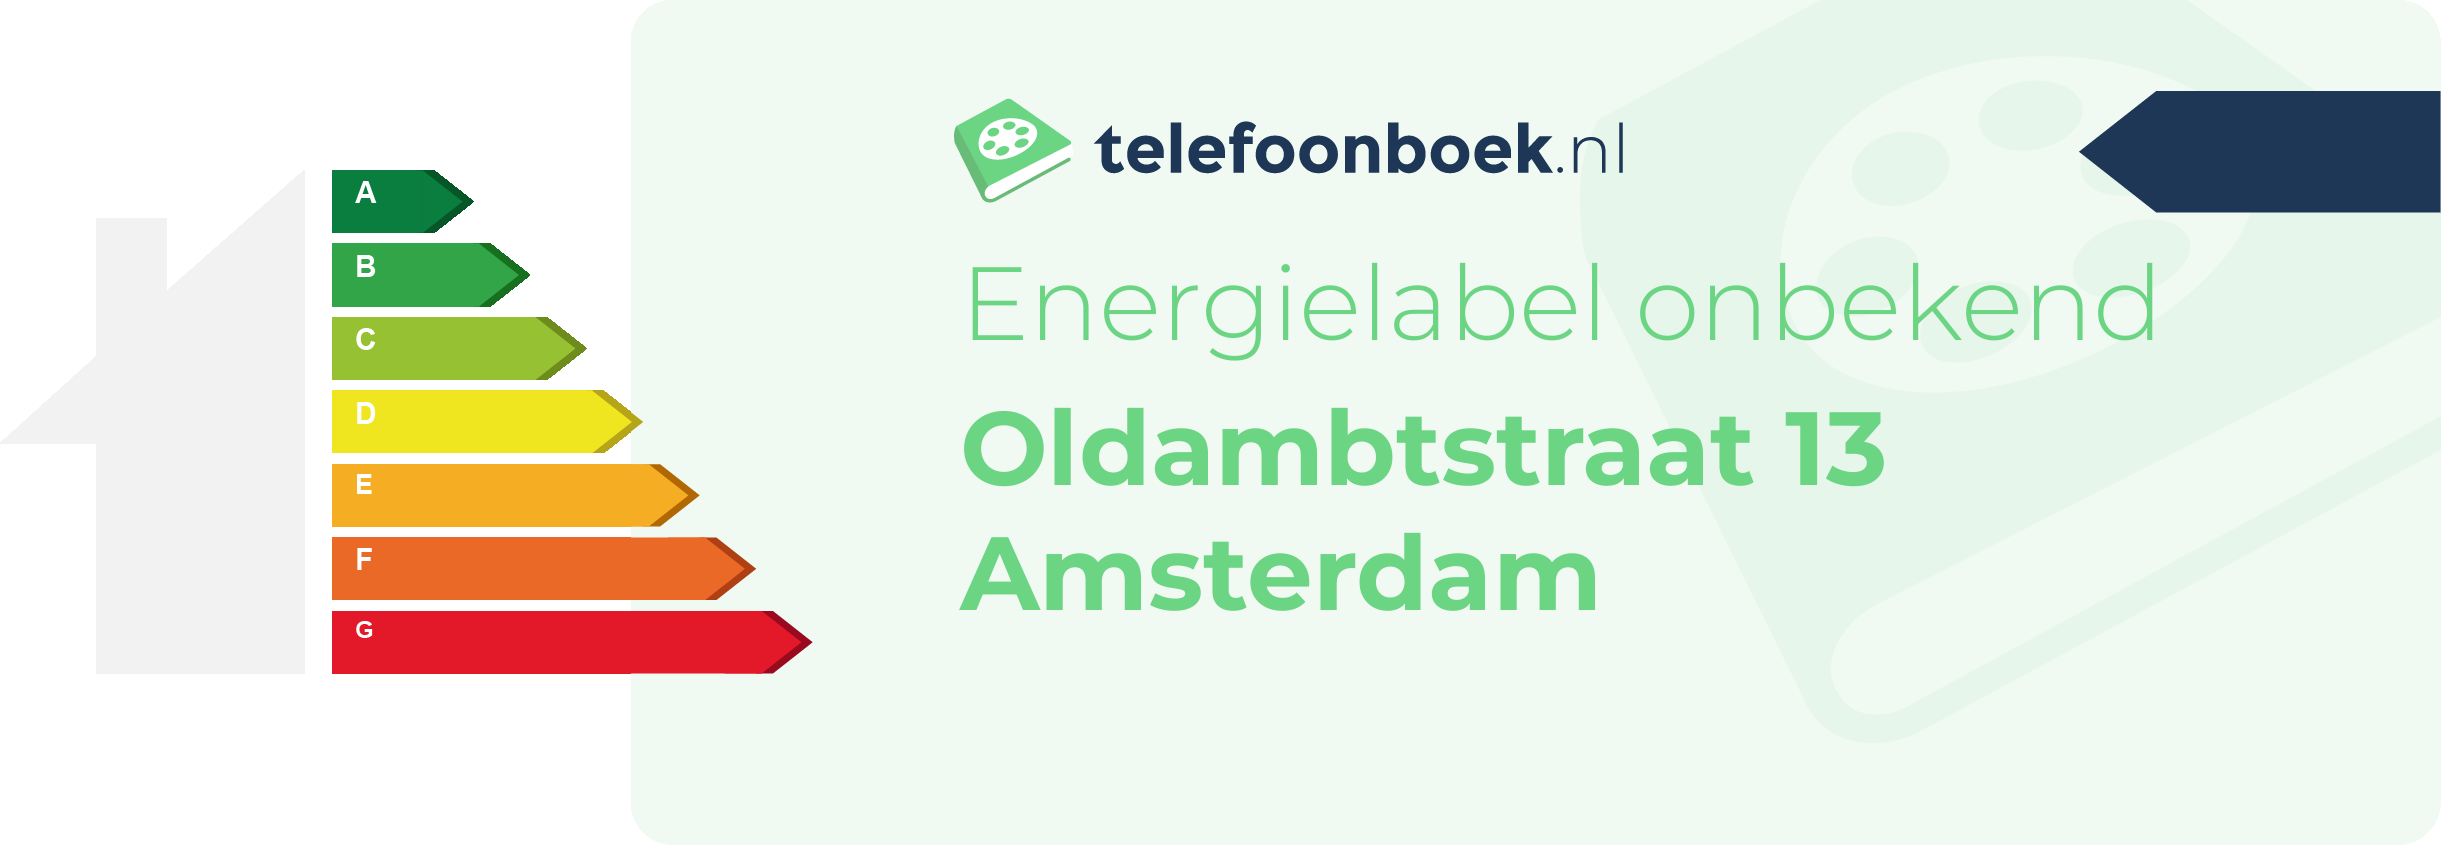 Energielabel Oldambtstraat 13 Amsterdam